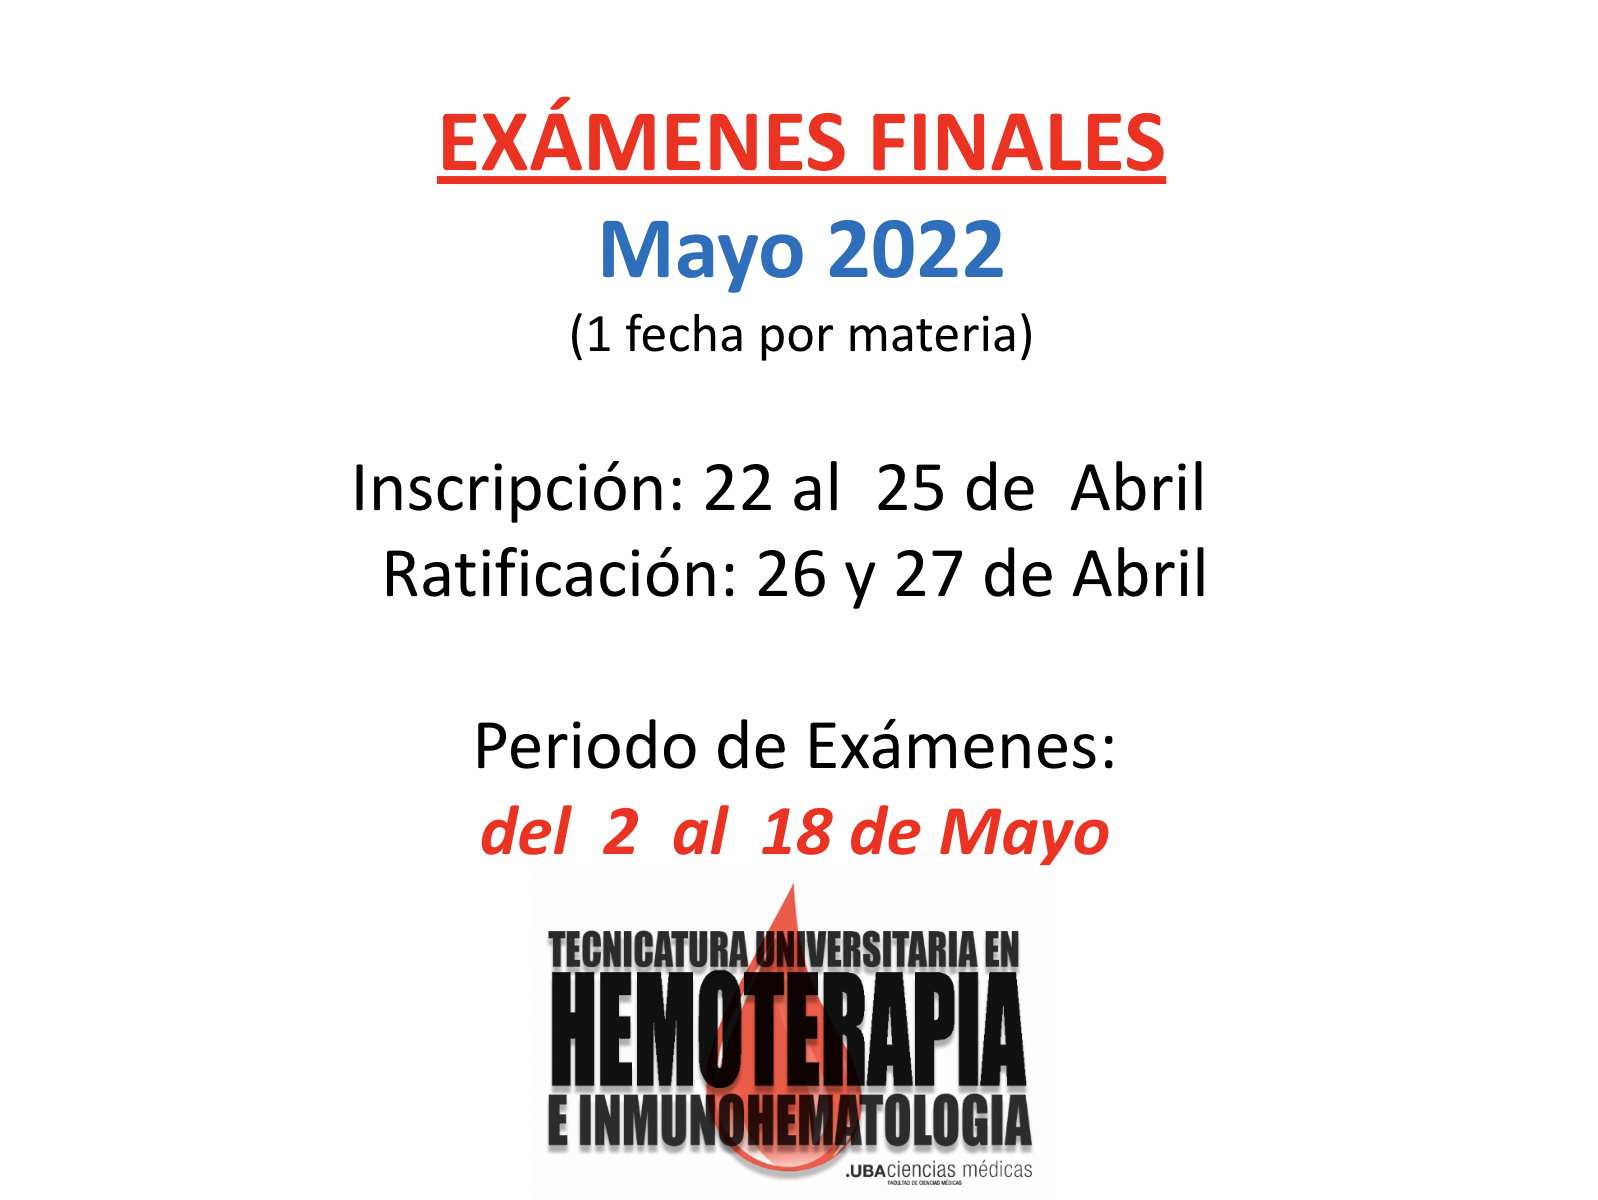 Inscripcion Finales Mayo 2022